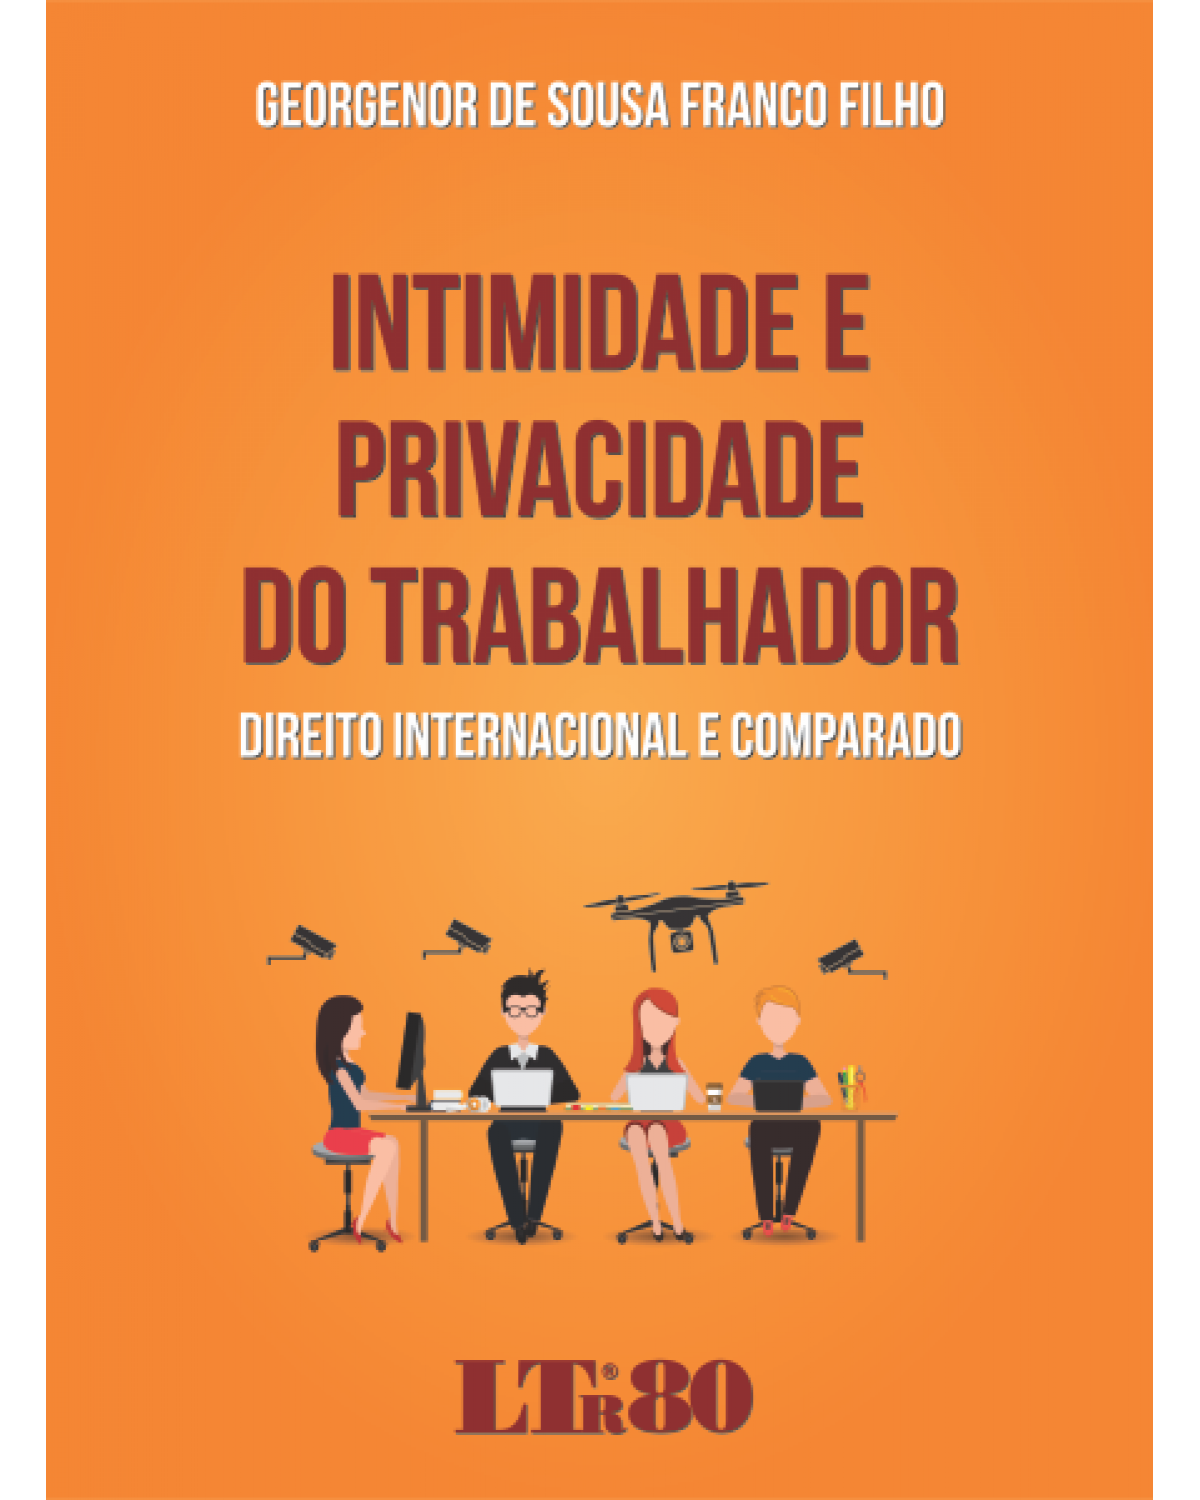 Intimidade e privacidade do trabalhador: Direito internacional e comparado - 1ª Edição